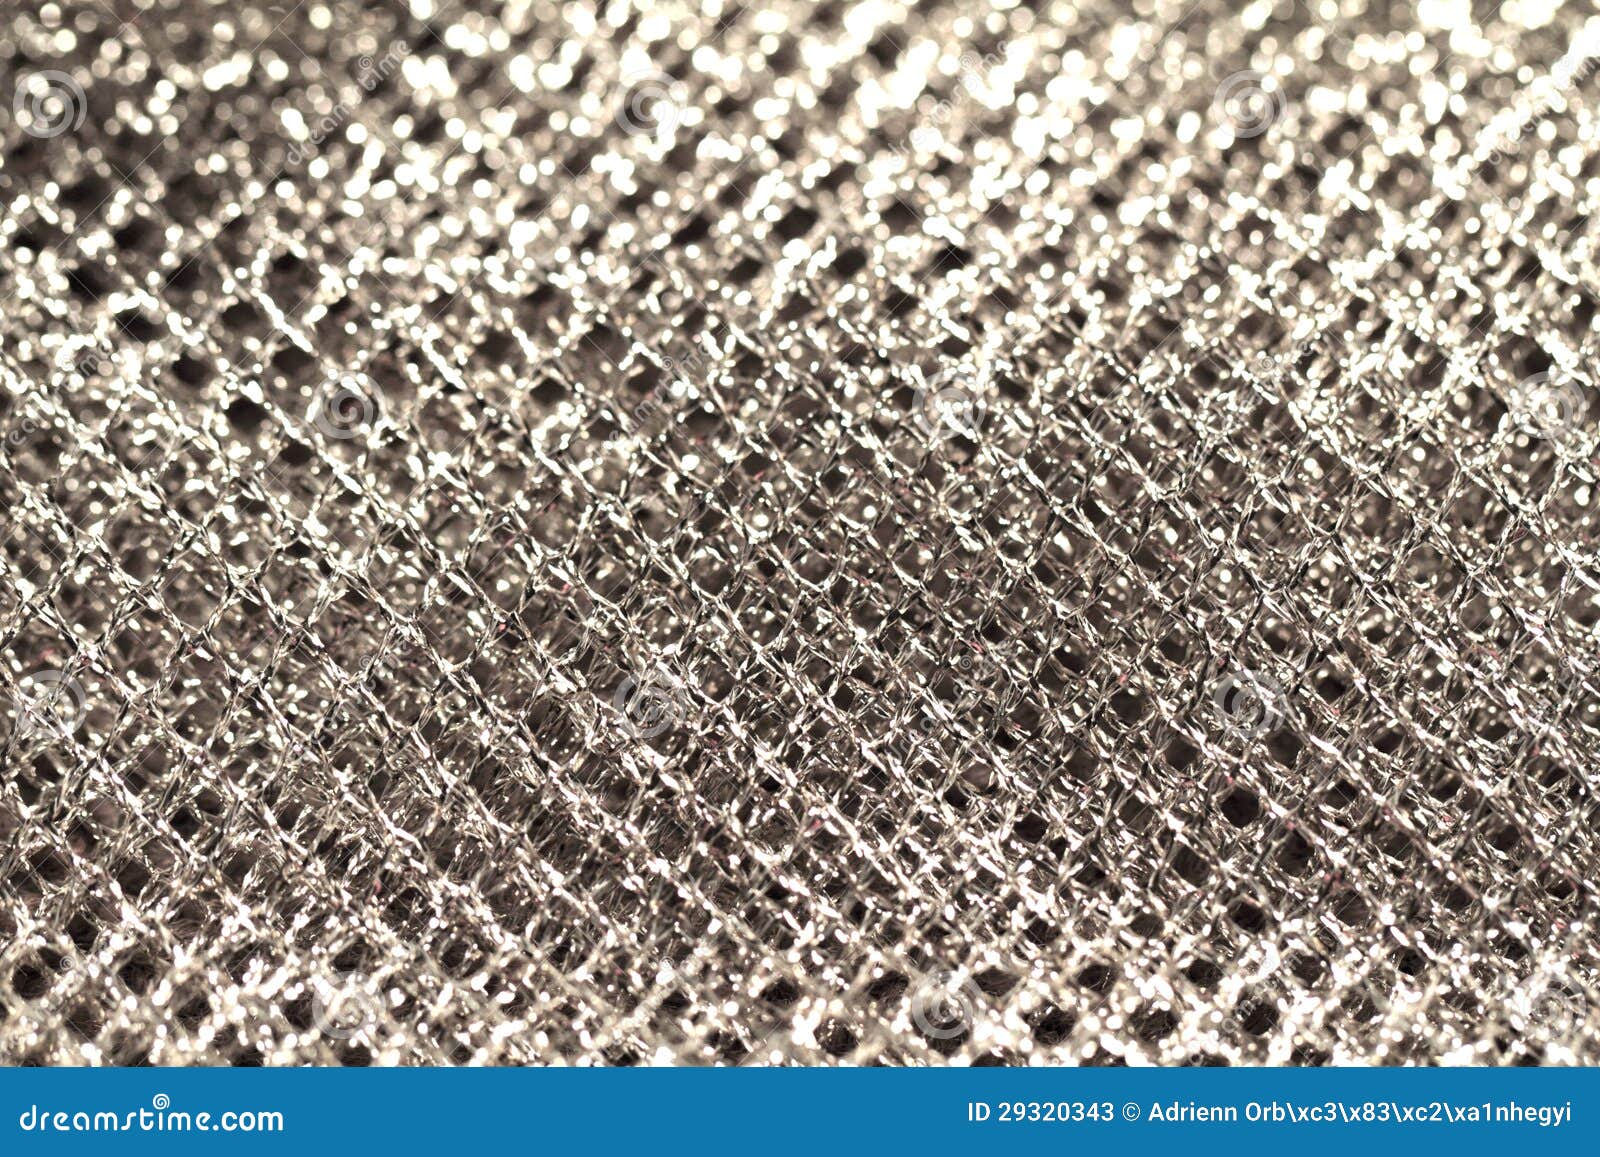 Fabric rendering v1. Как называется ткань серебристая в квадратик.